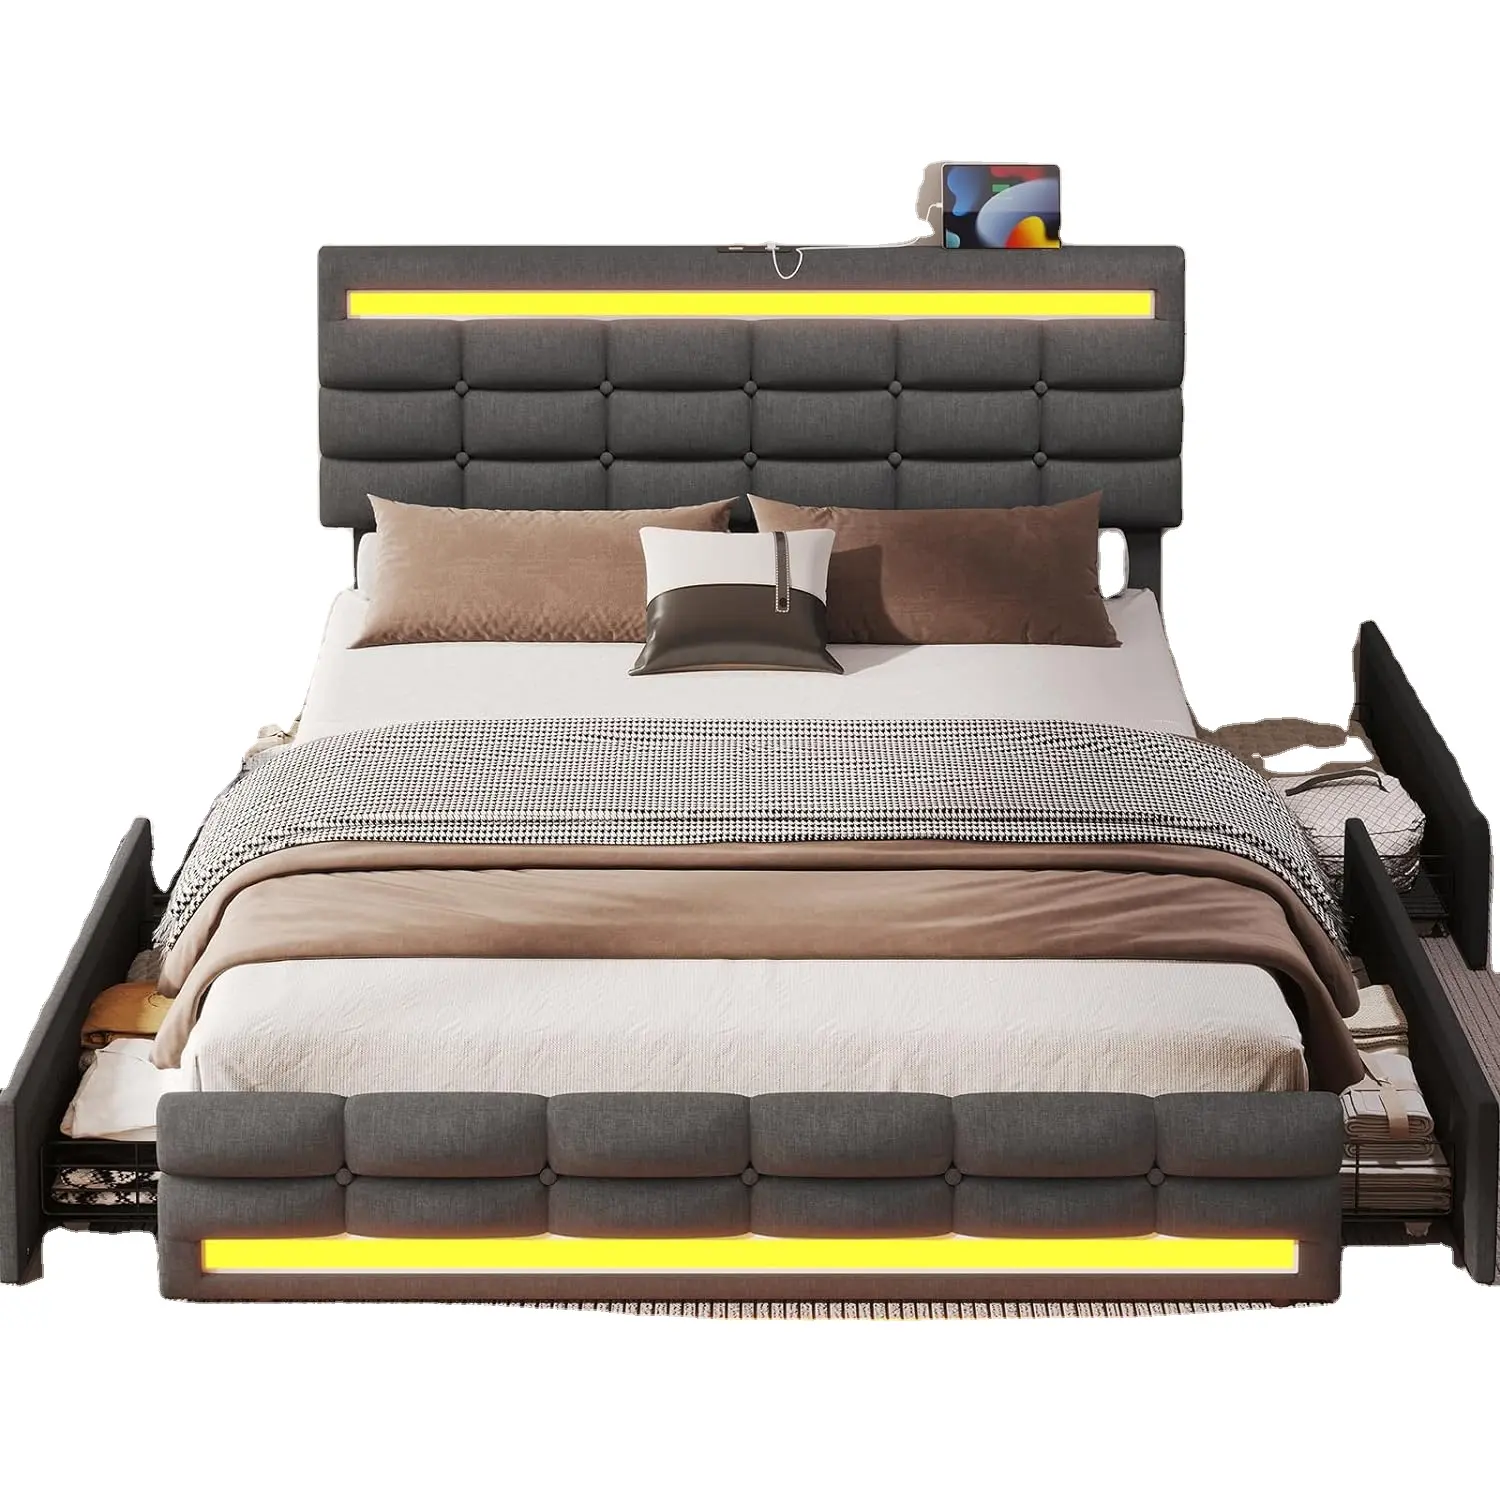 إطار سرير كبير بمصابيح LED و4 أدراج ومحطة شحن USB 2، إطار سرير كبير محشو ومقوى